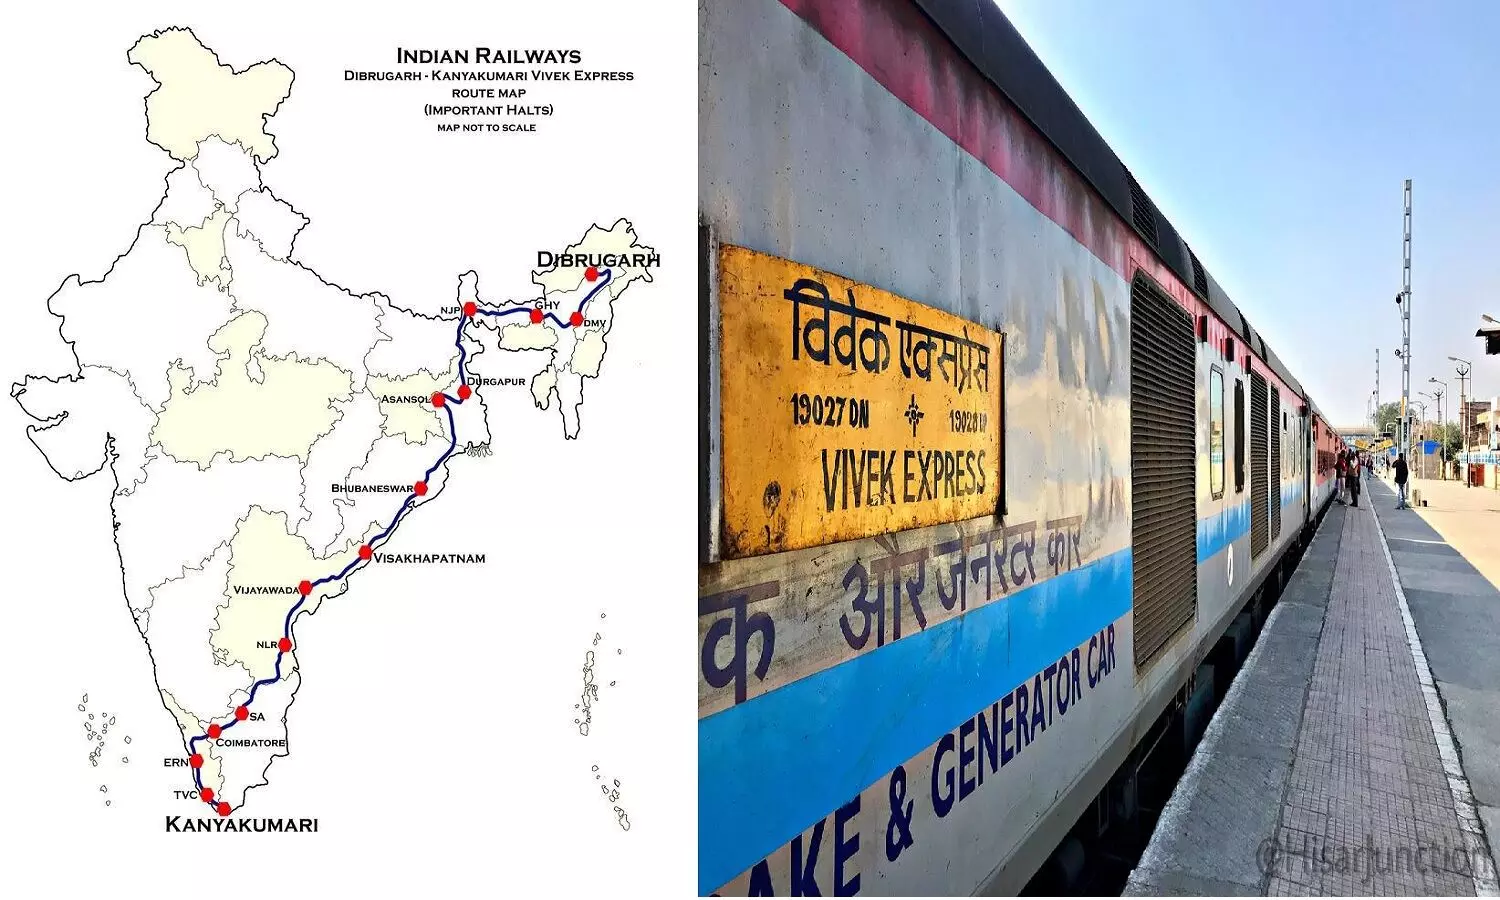 Indias Longest Train Route: भारत की सबसे लंबी रेल यात्रा में सफर करना आपके लाइफ की सबसे अच्छी जर्नी होगी